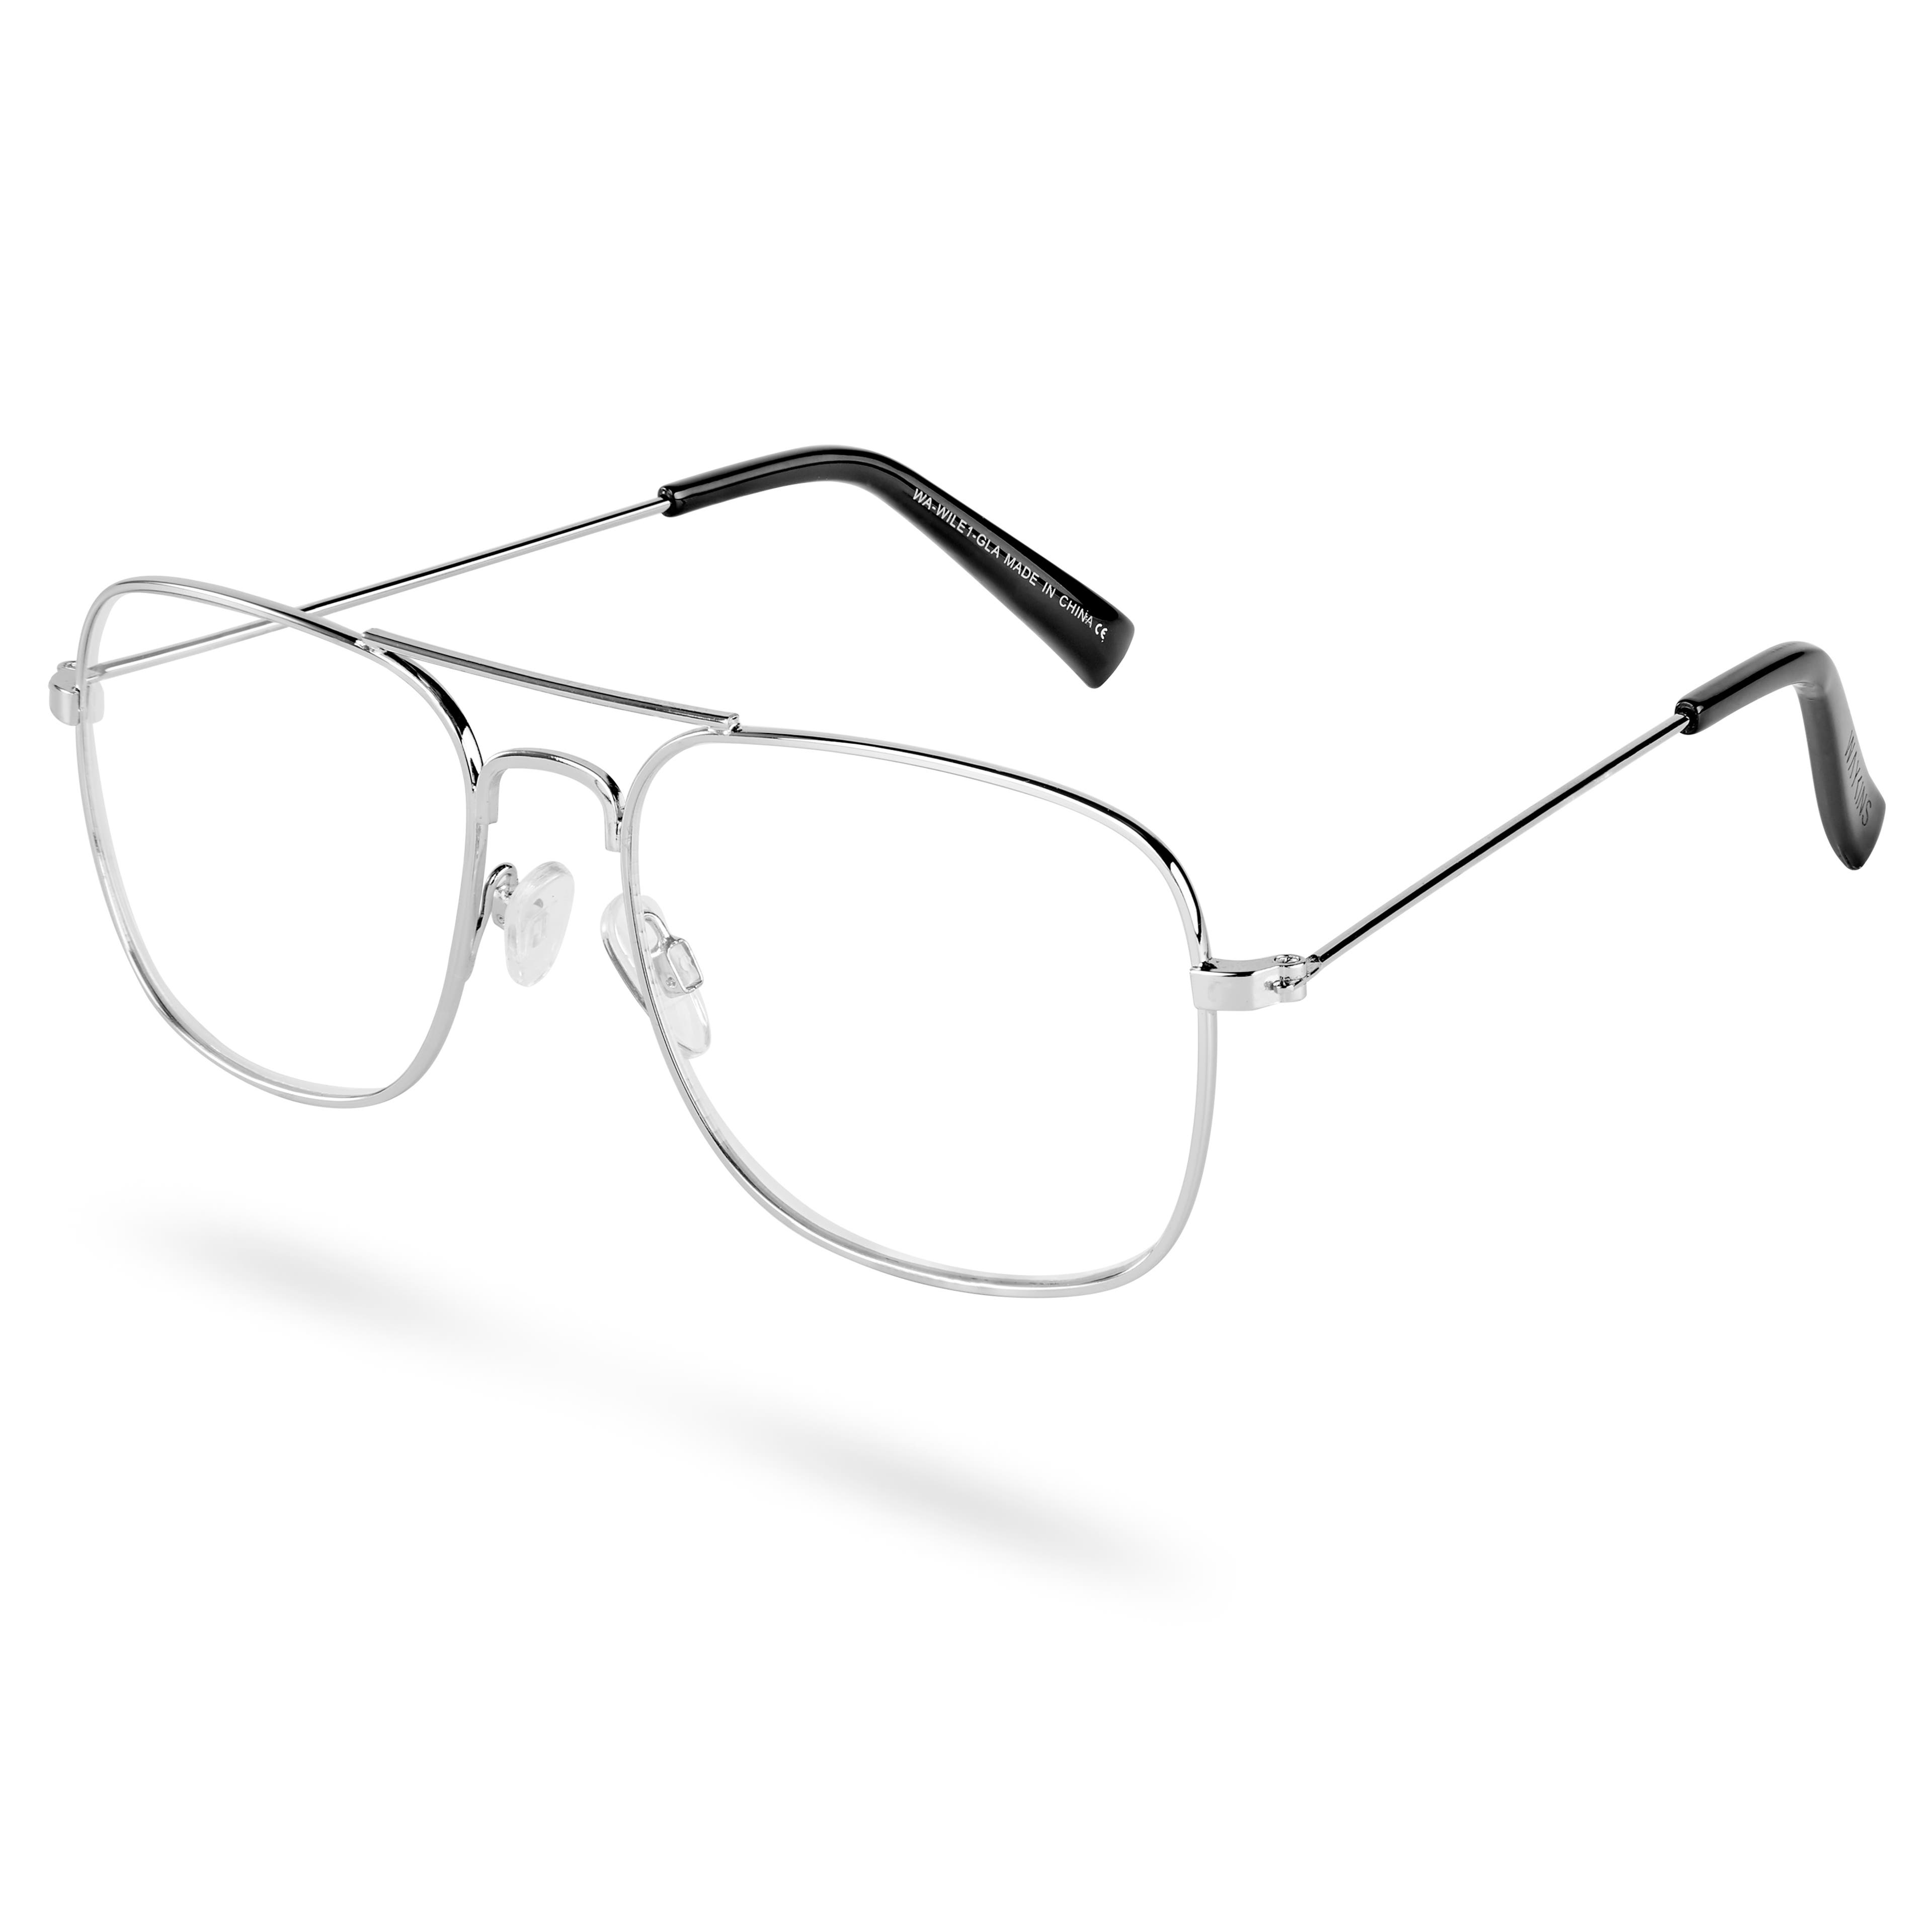 Wile Aviator brýle s čirými čočkami